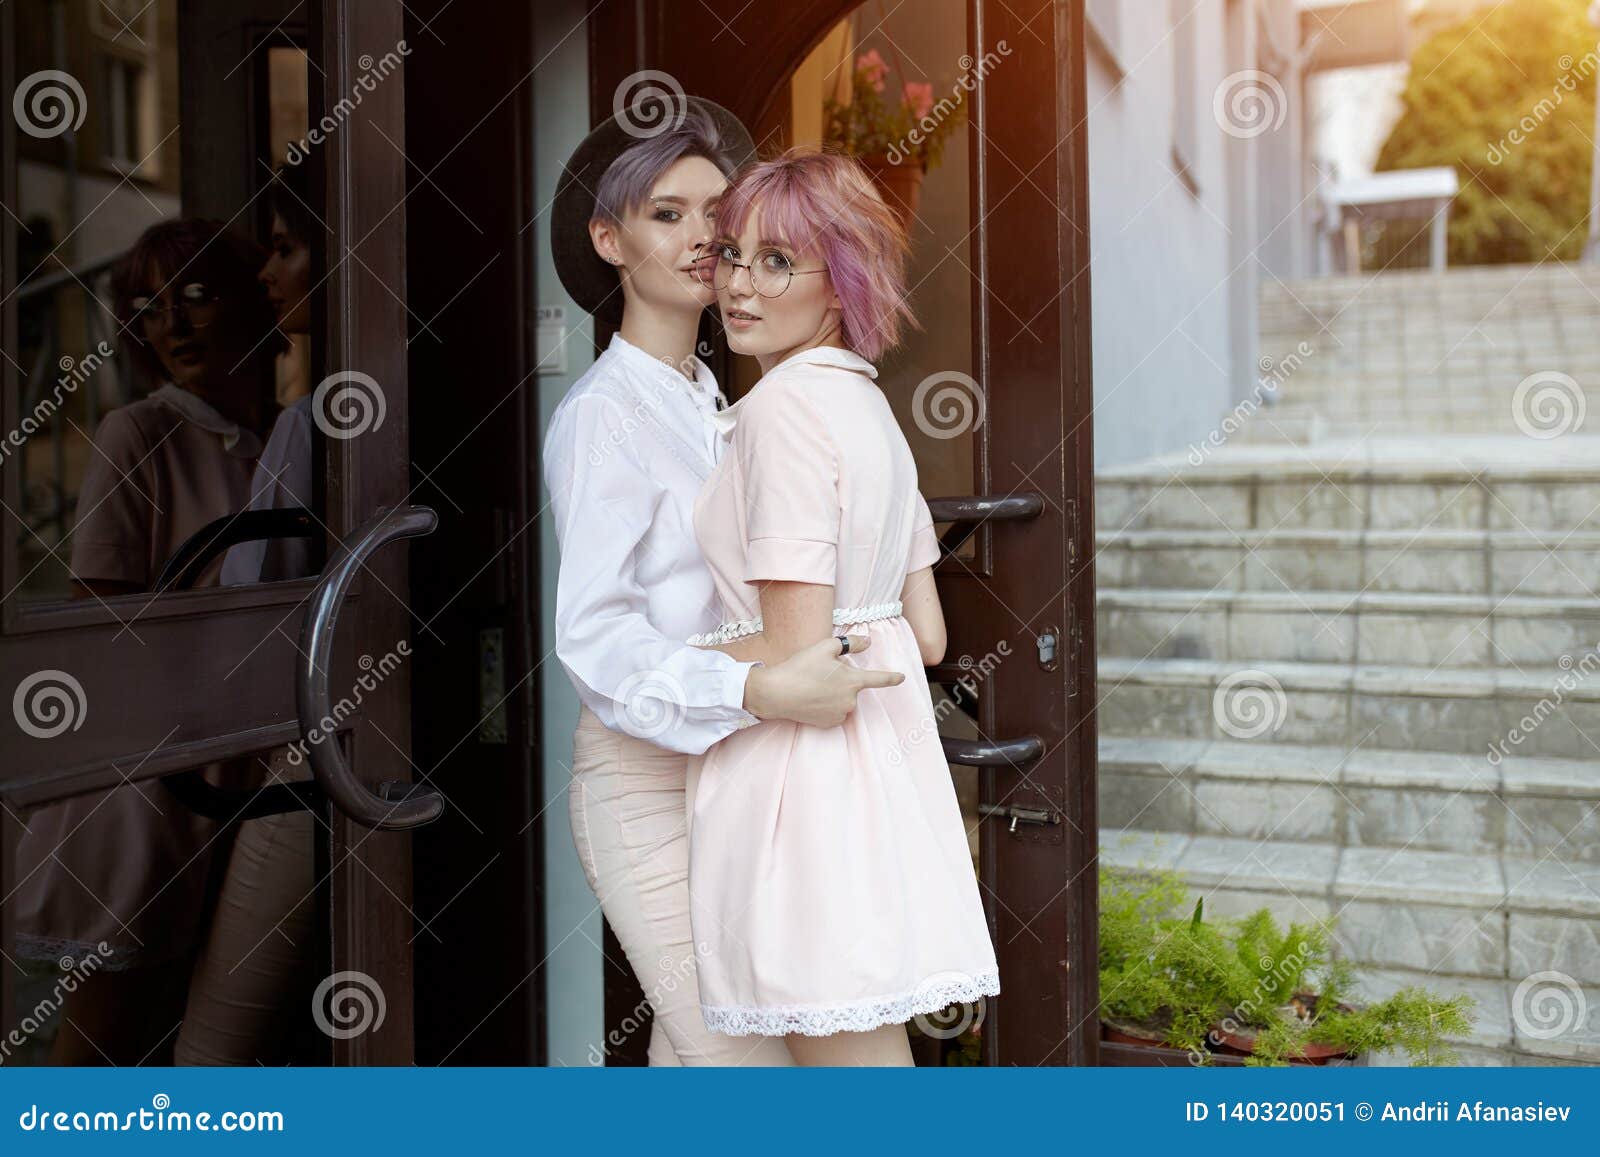 Lesbian Passion Pics